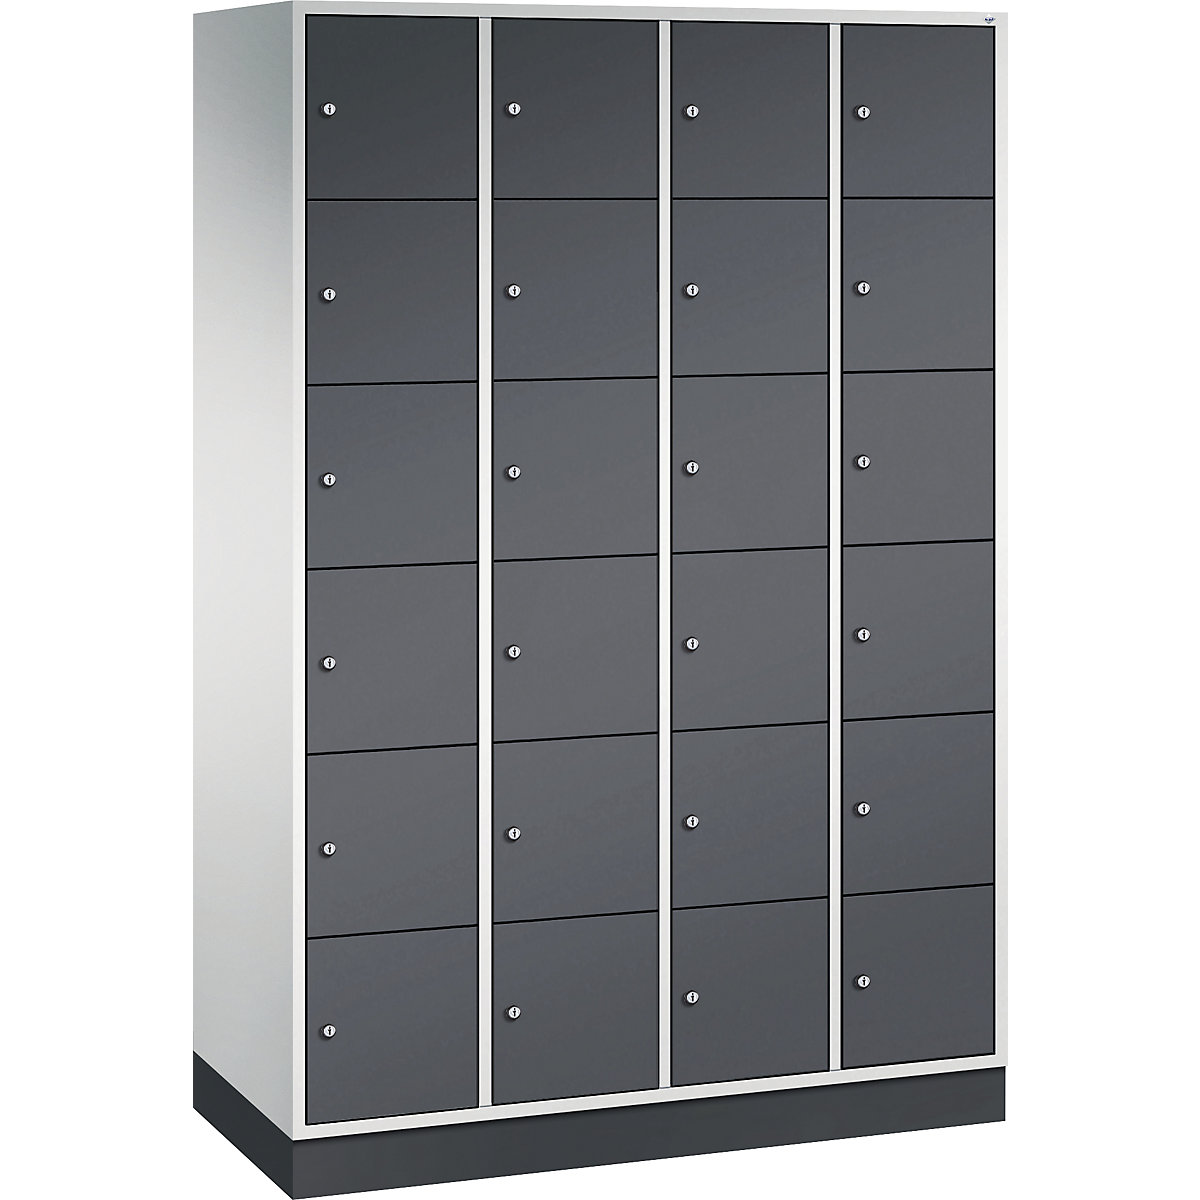 Vestiaire multicases en acier INTRO, casiers hauteur 285 mm – C+P, l x p 1220 x 500 mm, 24 casiers, corps gris clair, portes gris noir-14